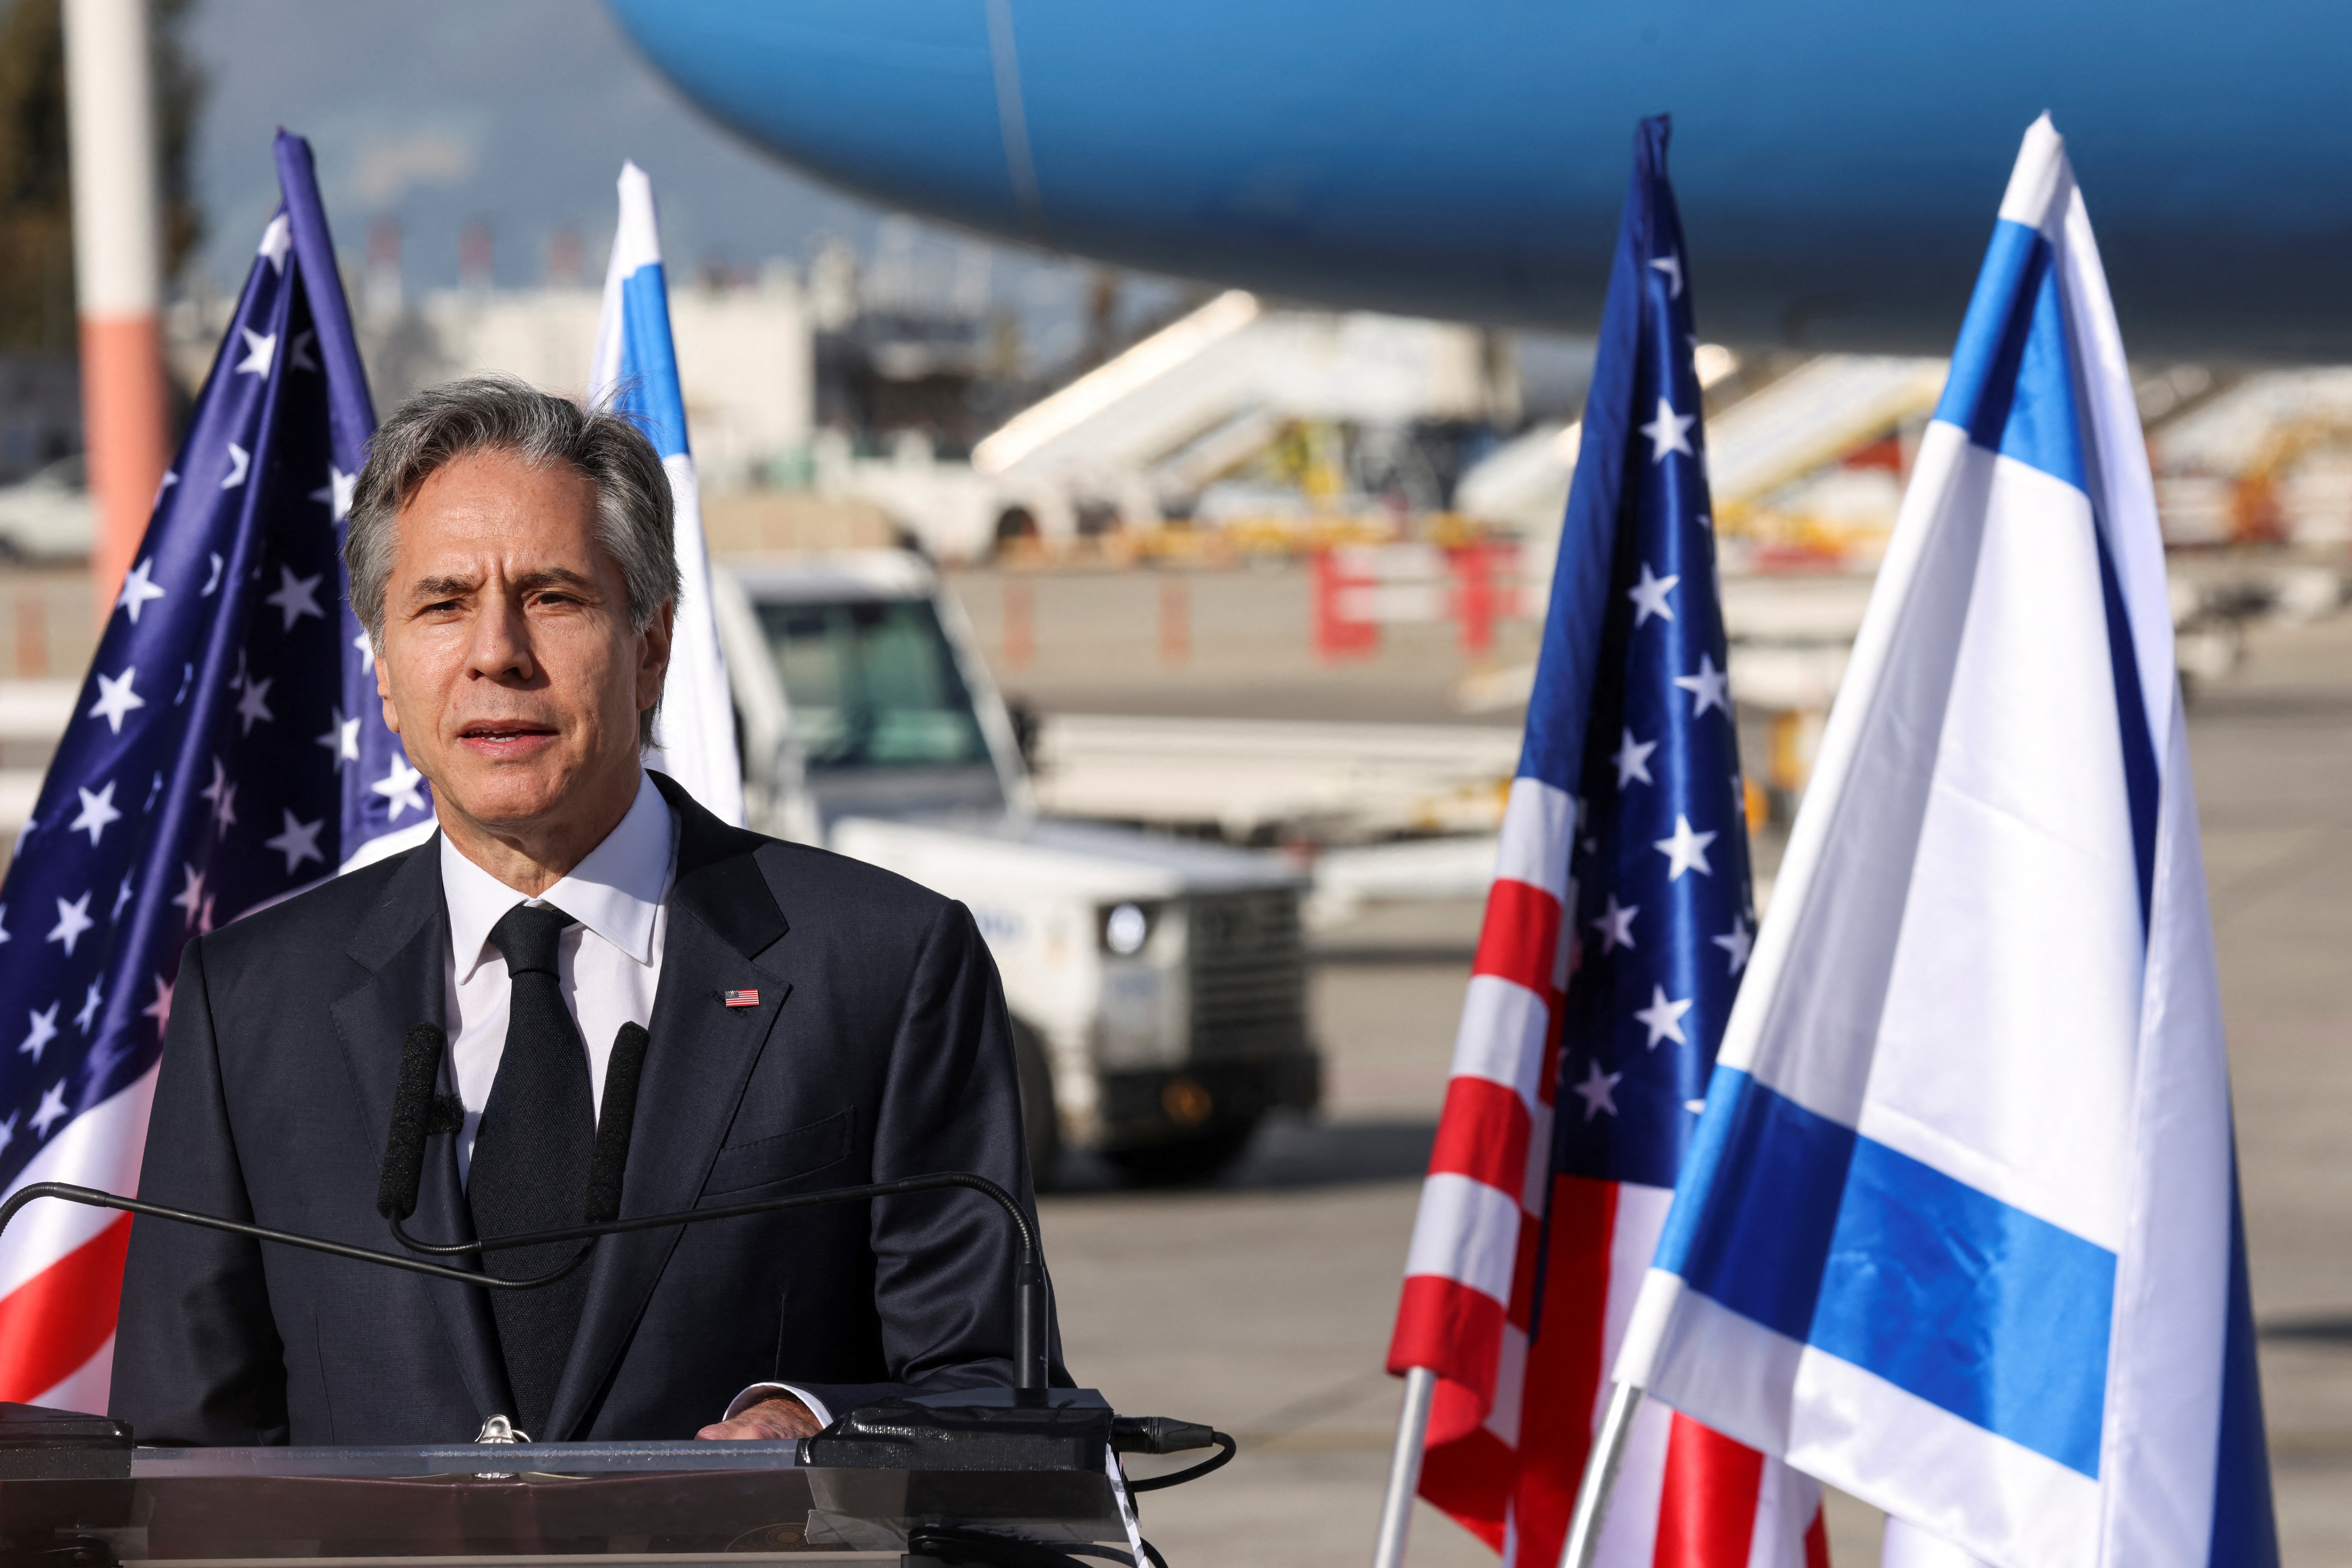 Blinken making statements after landing in Tel Aviv (RONALDO SCHEMIDT/REUTERS)